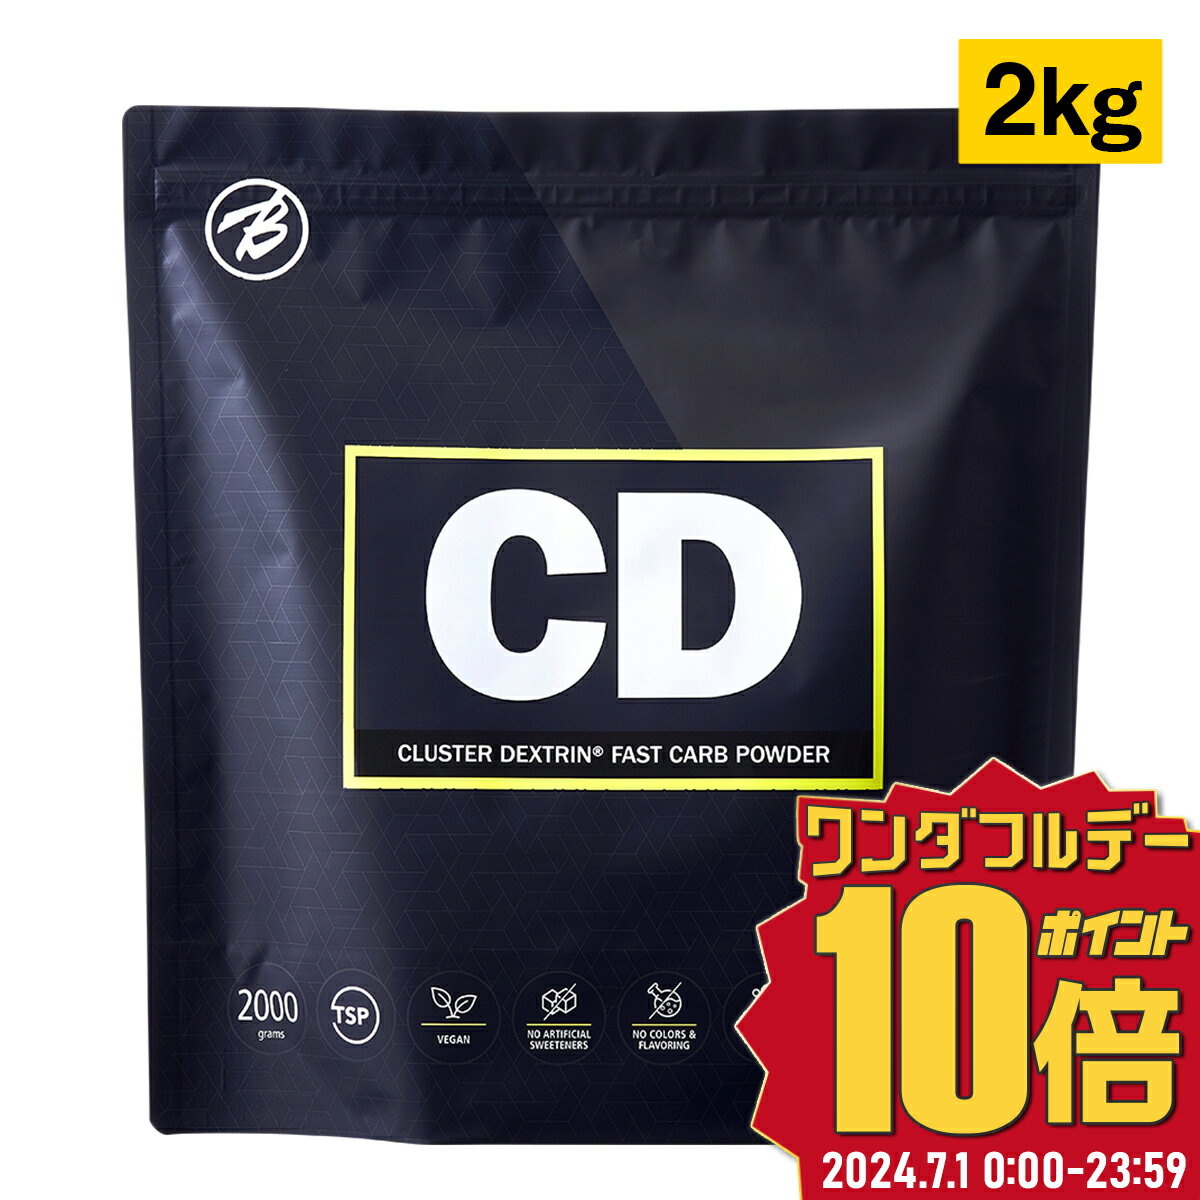 CD(クラスターデキストリン 国産) 2kg 約90食分 ギフト